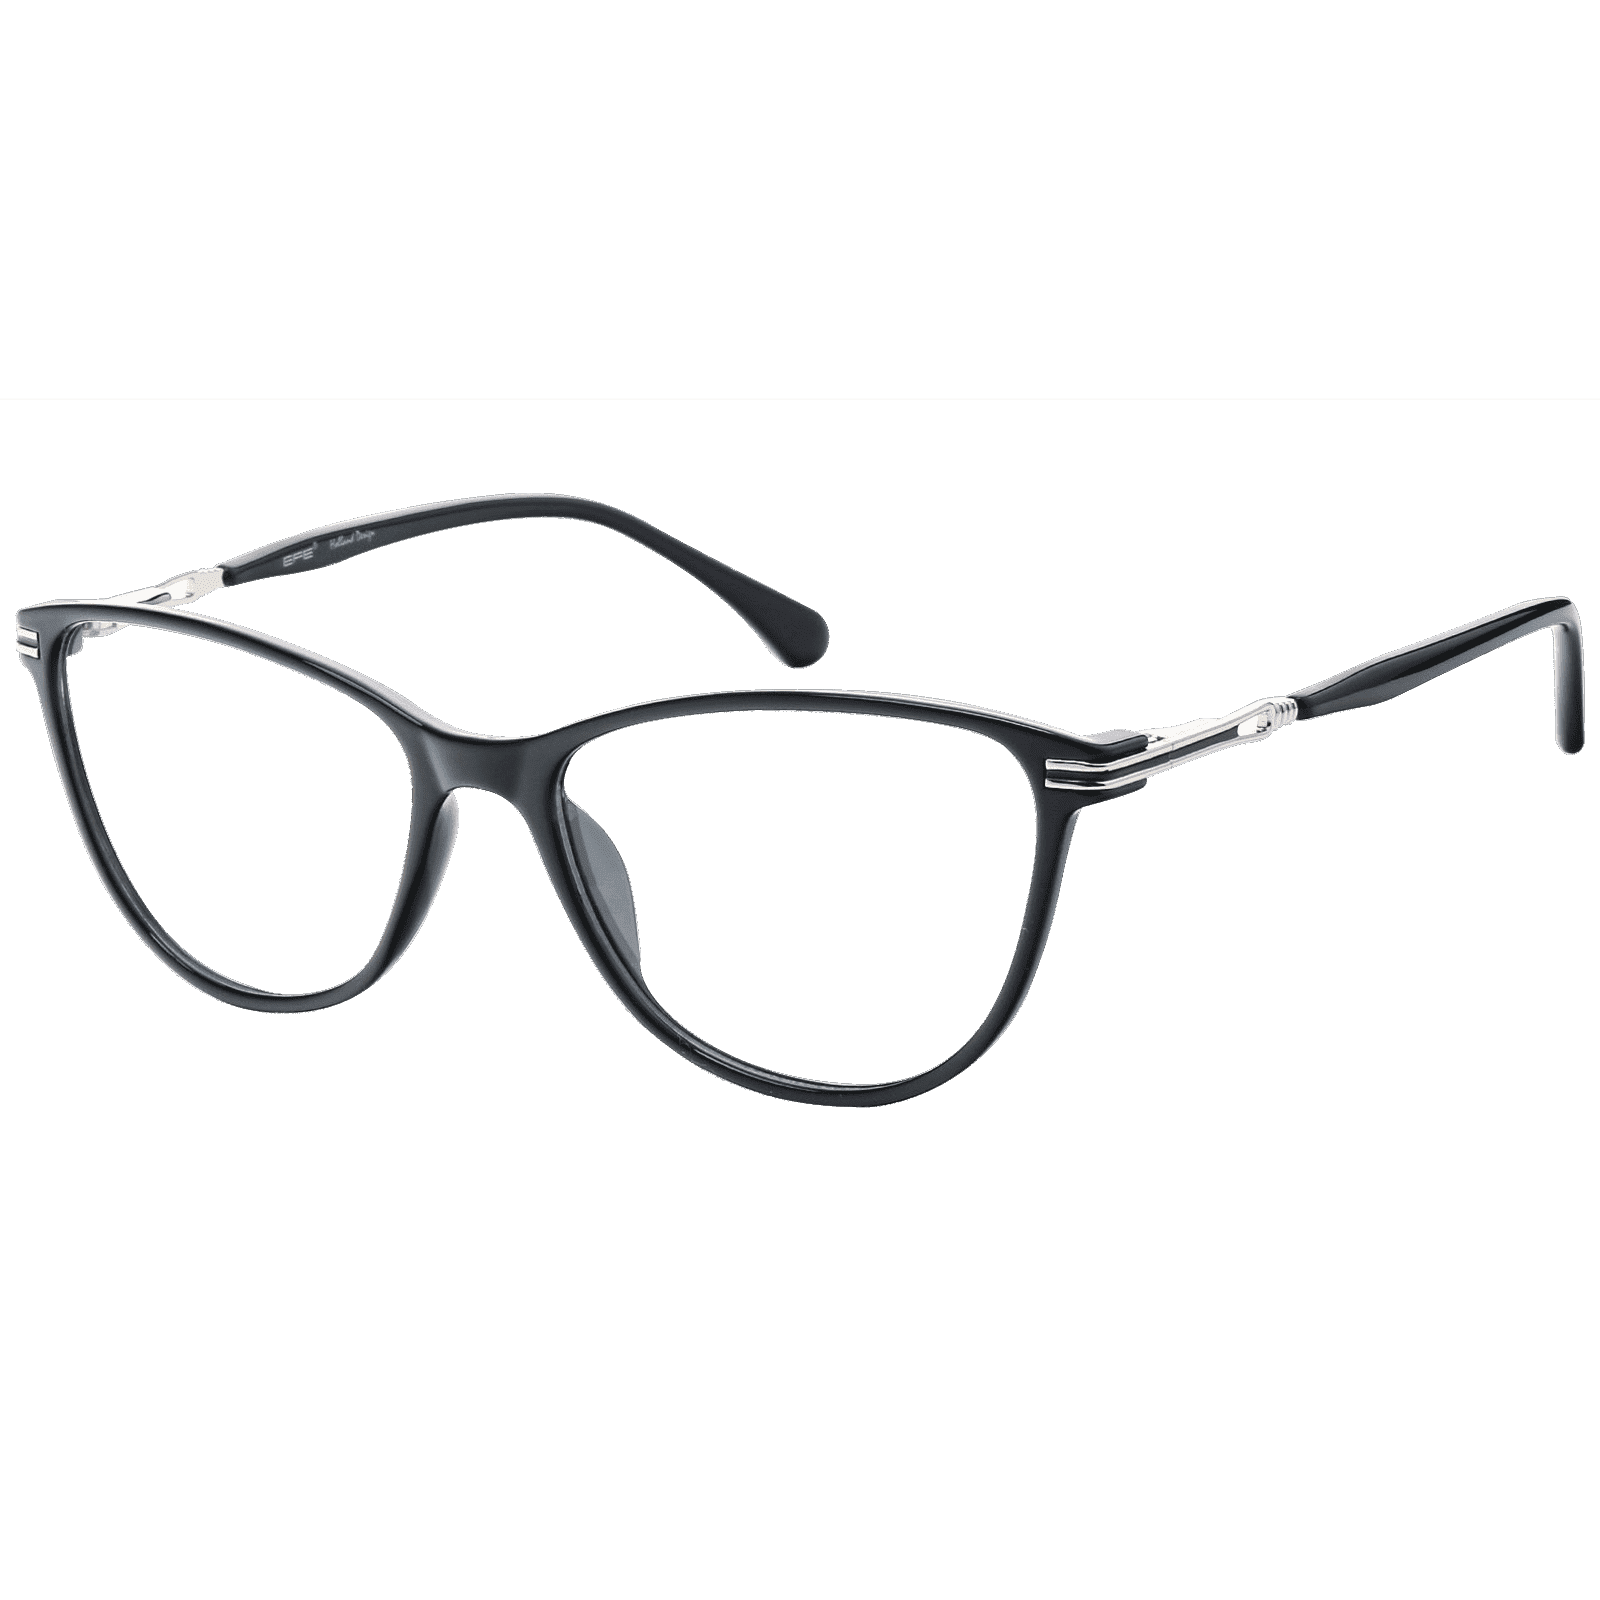 Aglaia - Cat-eye Black Reading Glasses for Women